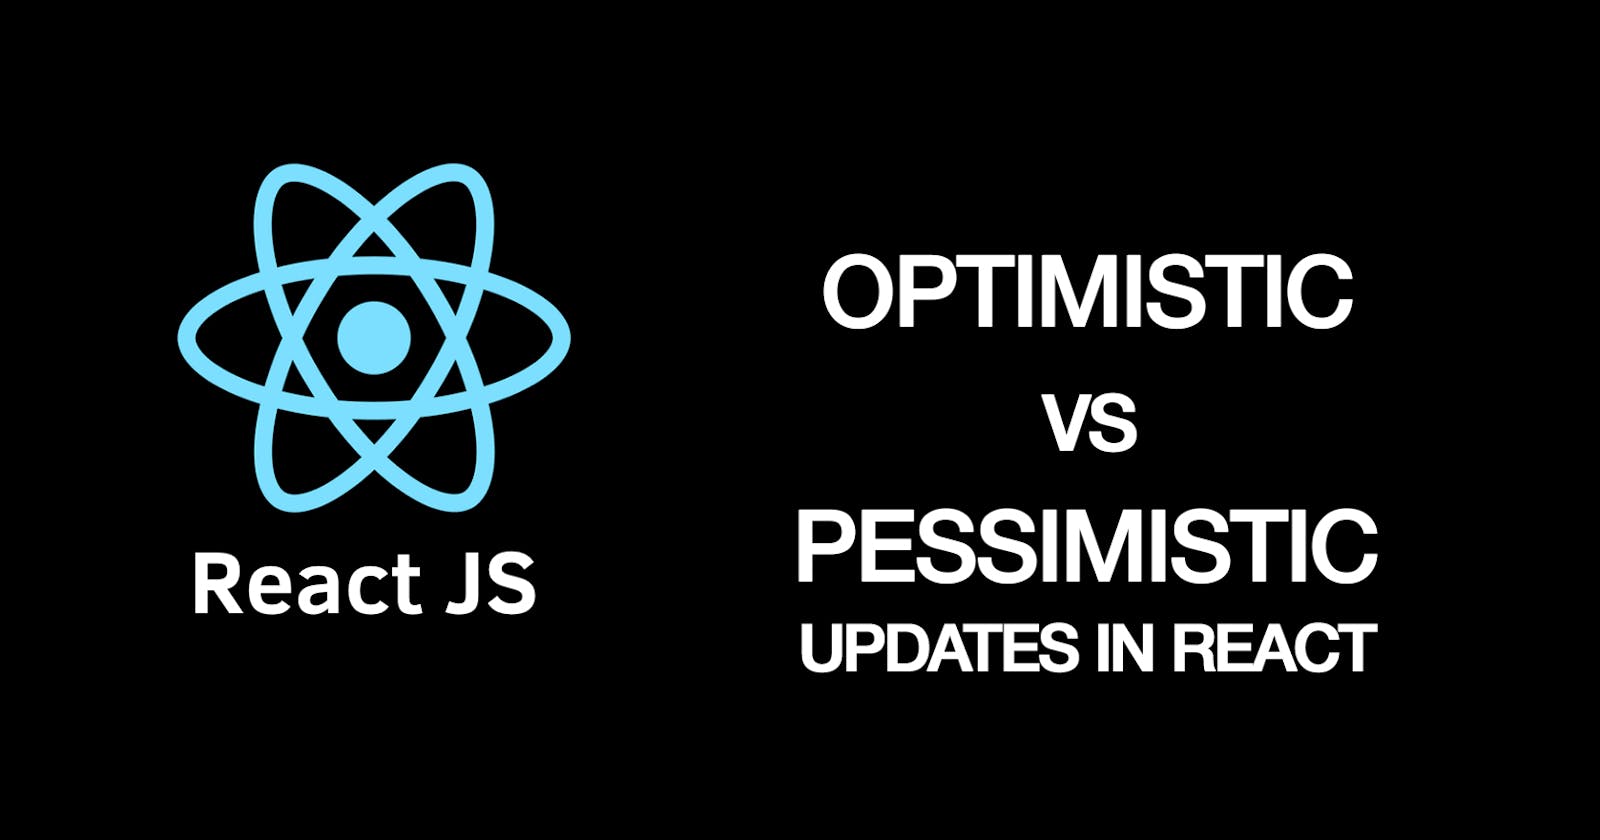 Optimistic Vs Pessimistic operations in REACT